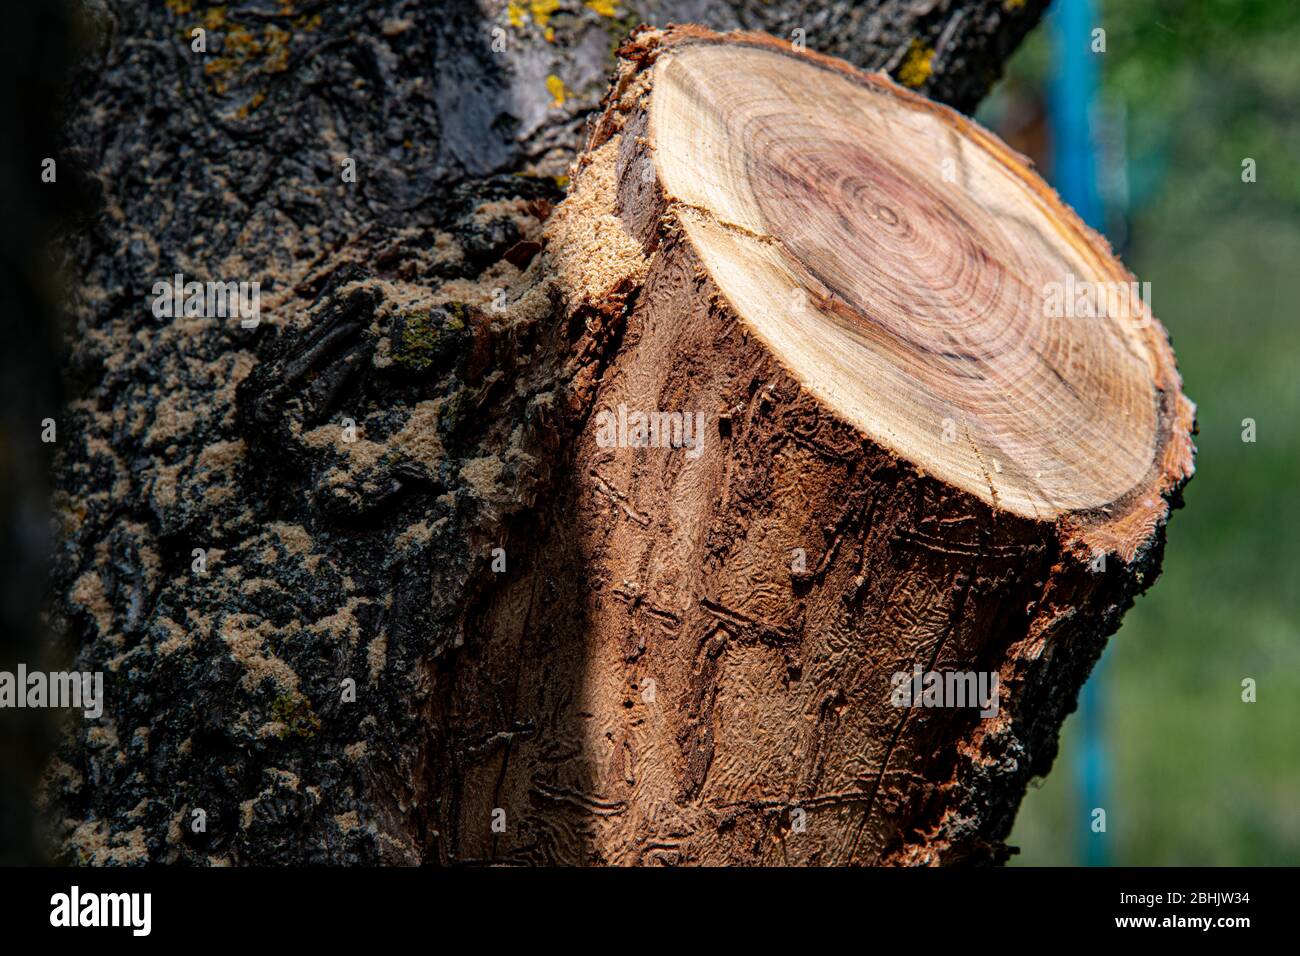 Bosse d'arbre avec texture de bois fissuré et écorce d'arbre rugueuse. Fond rustique en bois. Fermeture de la coupe transversale en bois Banque D'Images